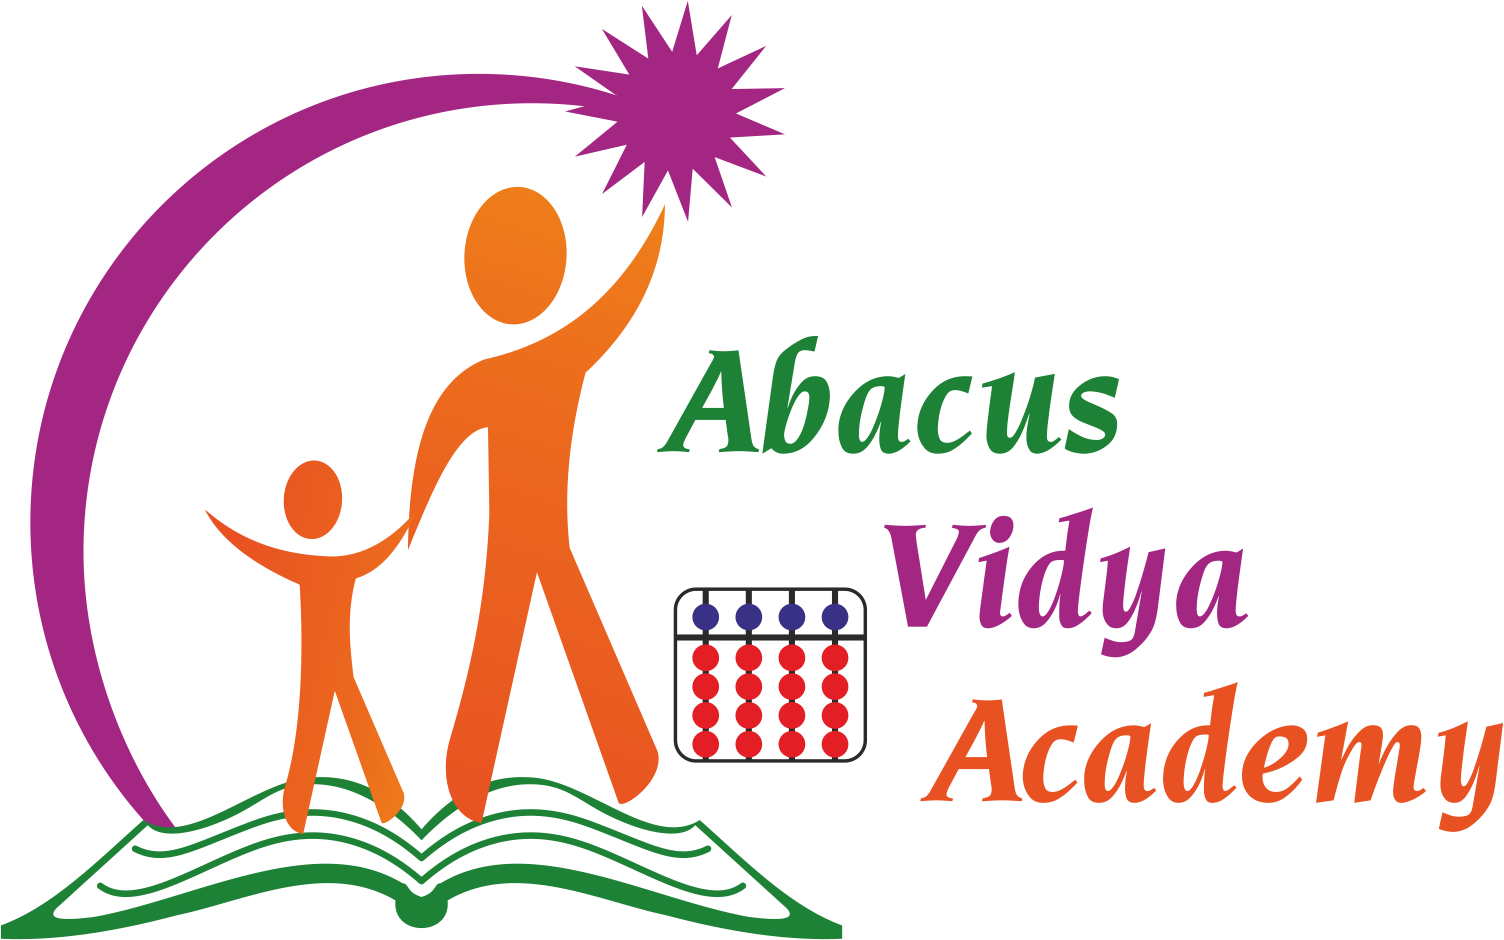 Abacus Dvd Tutorials, Abacus Video Tutorials - New Delhi (1504x940), Png Download